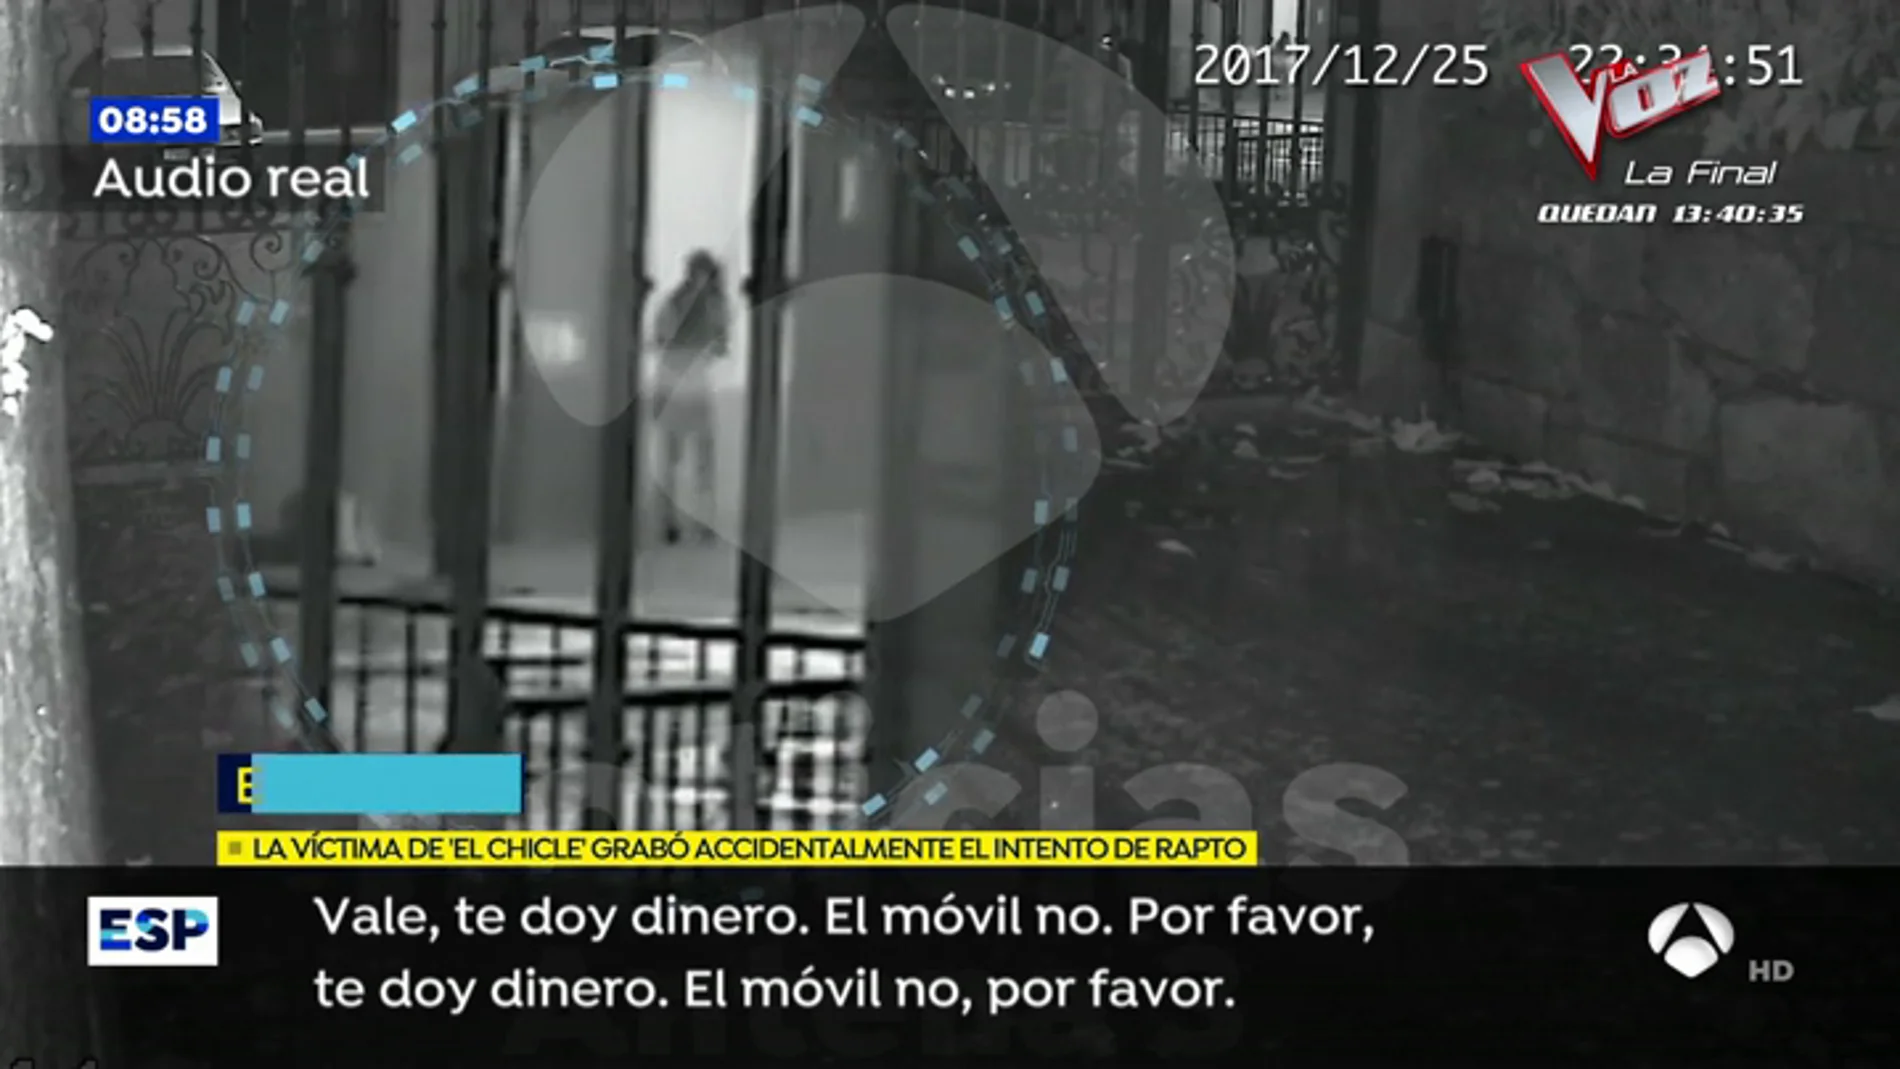  Espejo Público accede en exclusiva a la grabación del intento de rapto de 'El chcicle' con  las voces reales: "Si sigues gritando, te corto"